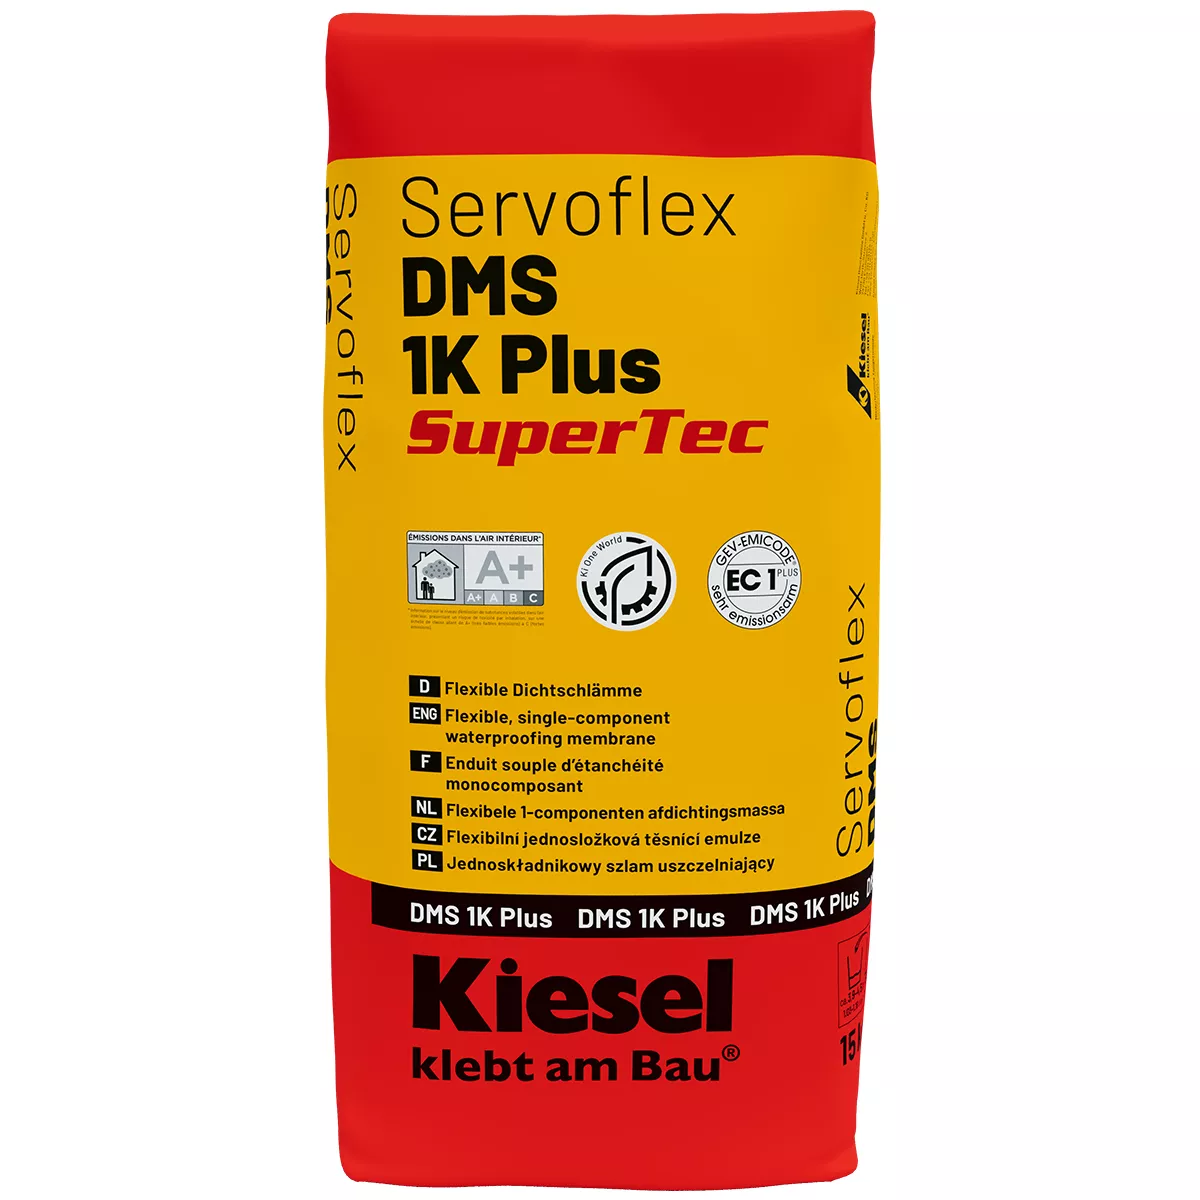 Flexible Dichtschlämme Kiesel Servoflex DMS 1K Plus 15 Kg